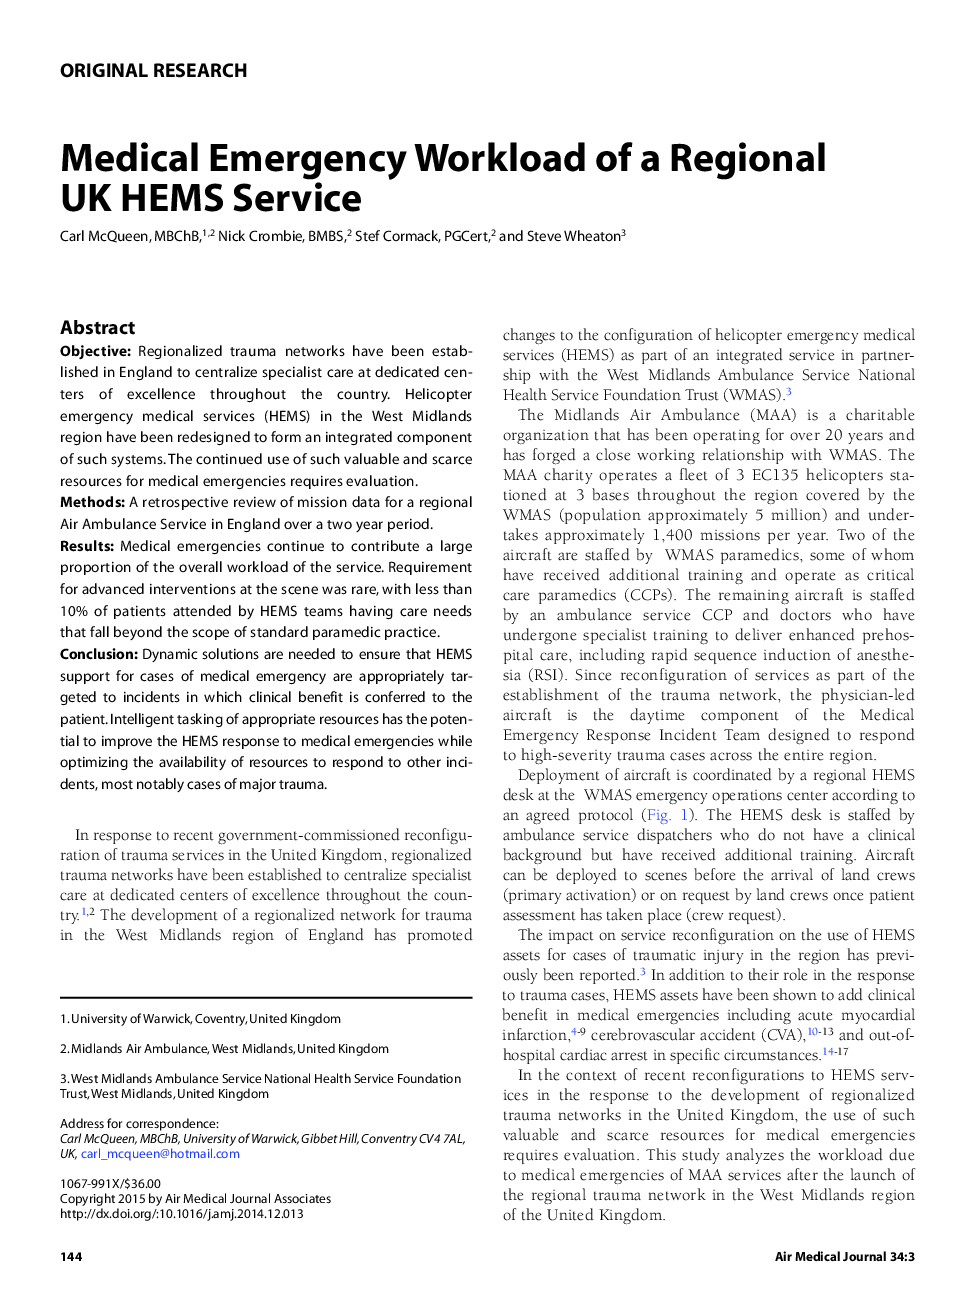 بار یا حجم کار خدمات اورژانس پزشکی یک سرویس منطقه ای  HEMS در انگلستان